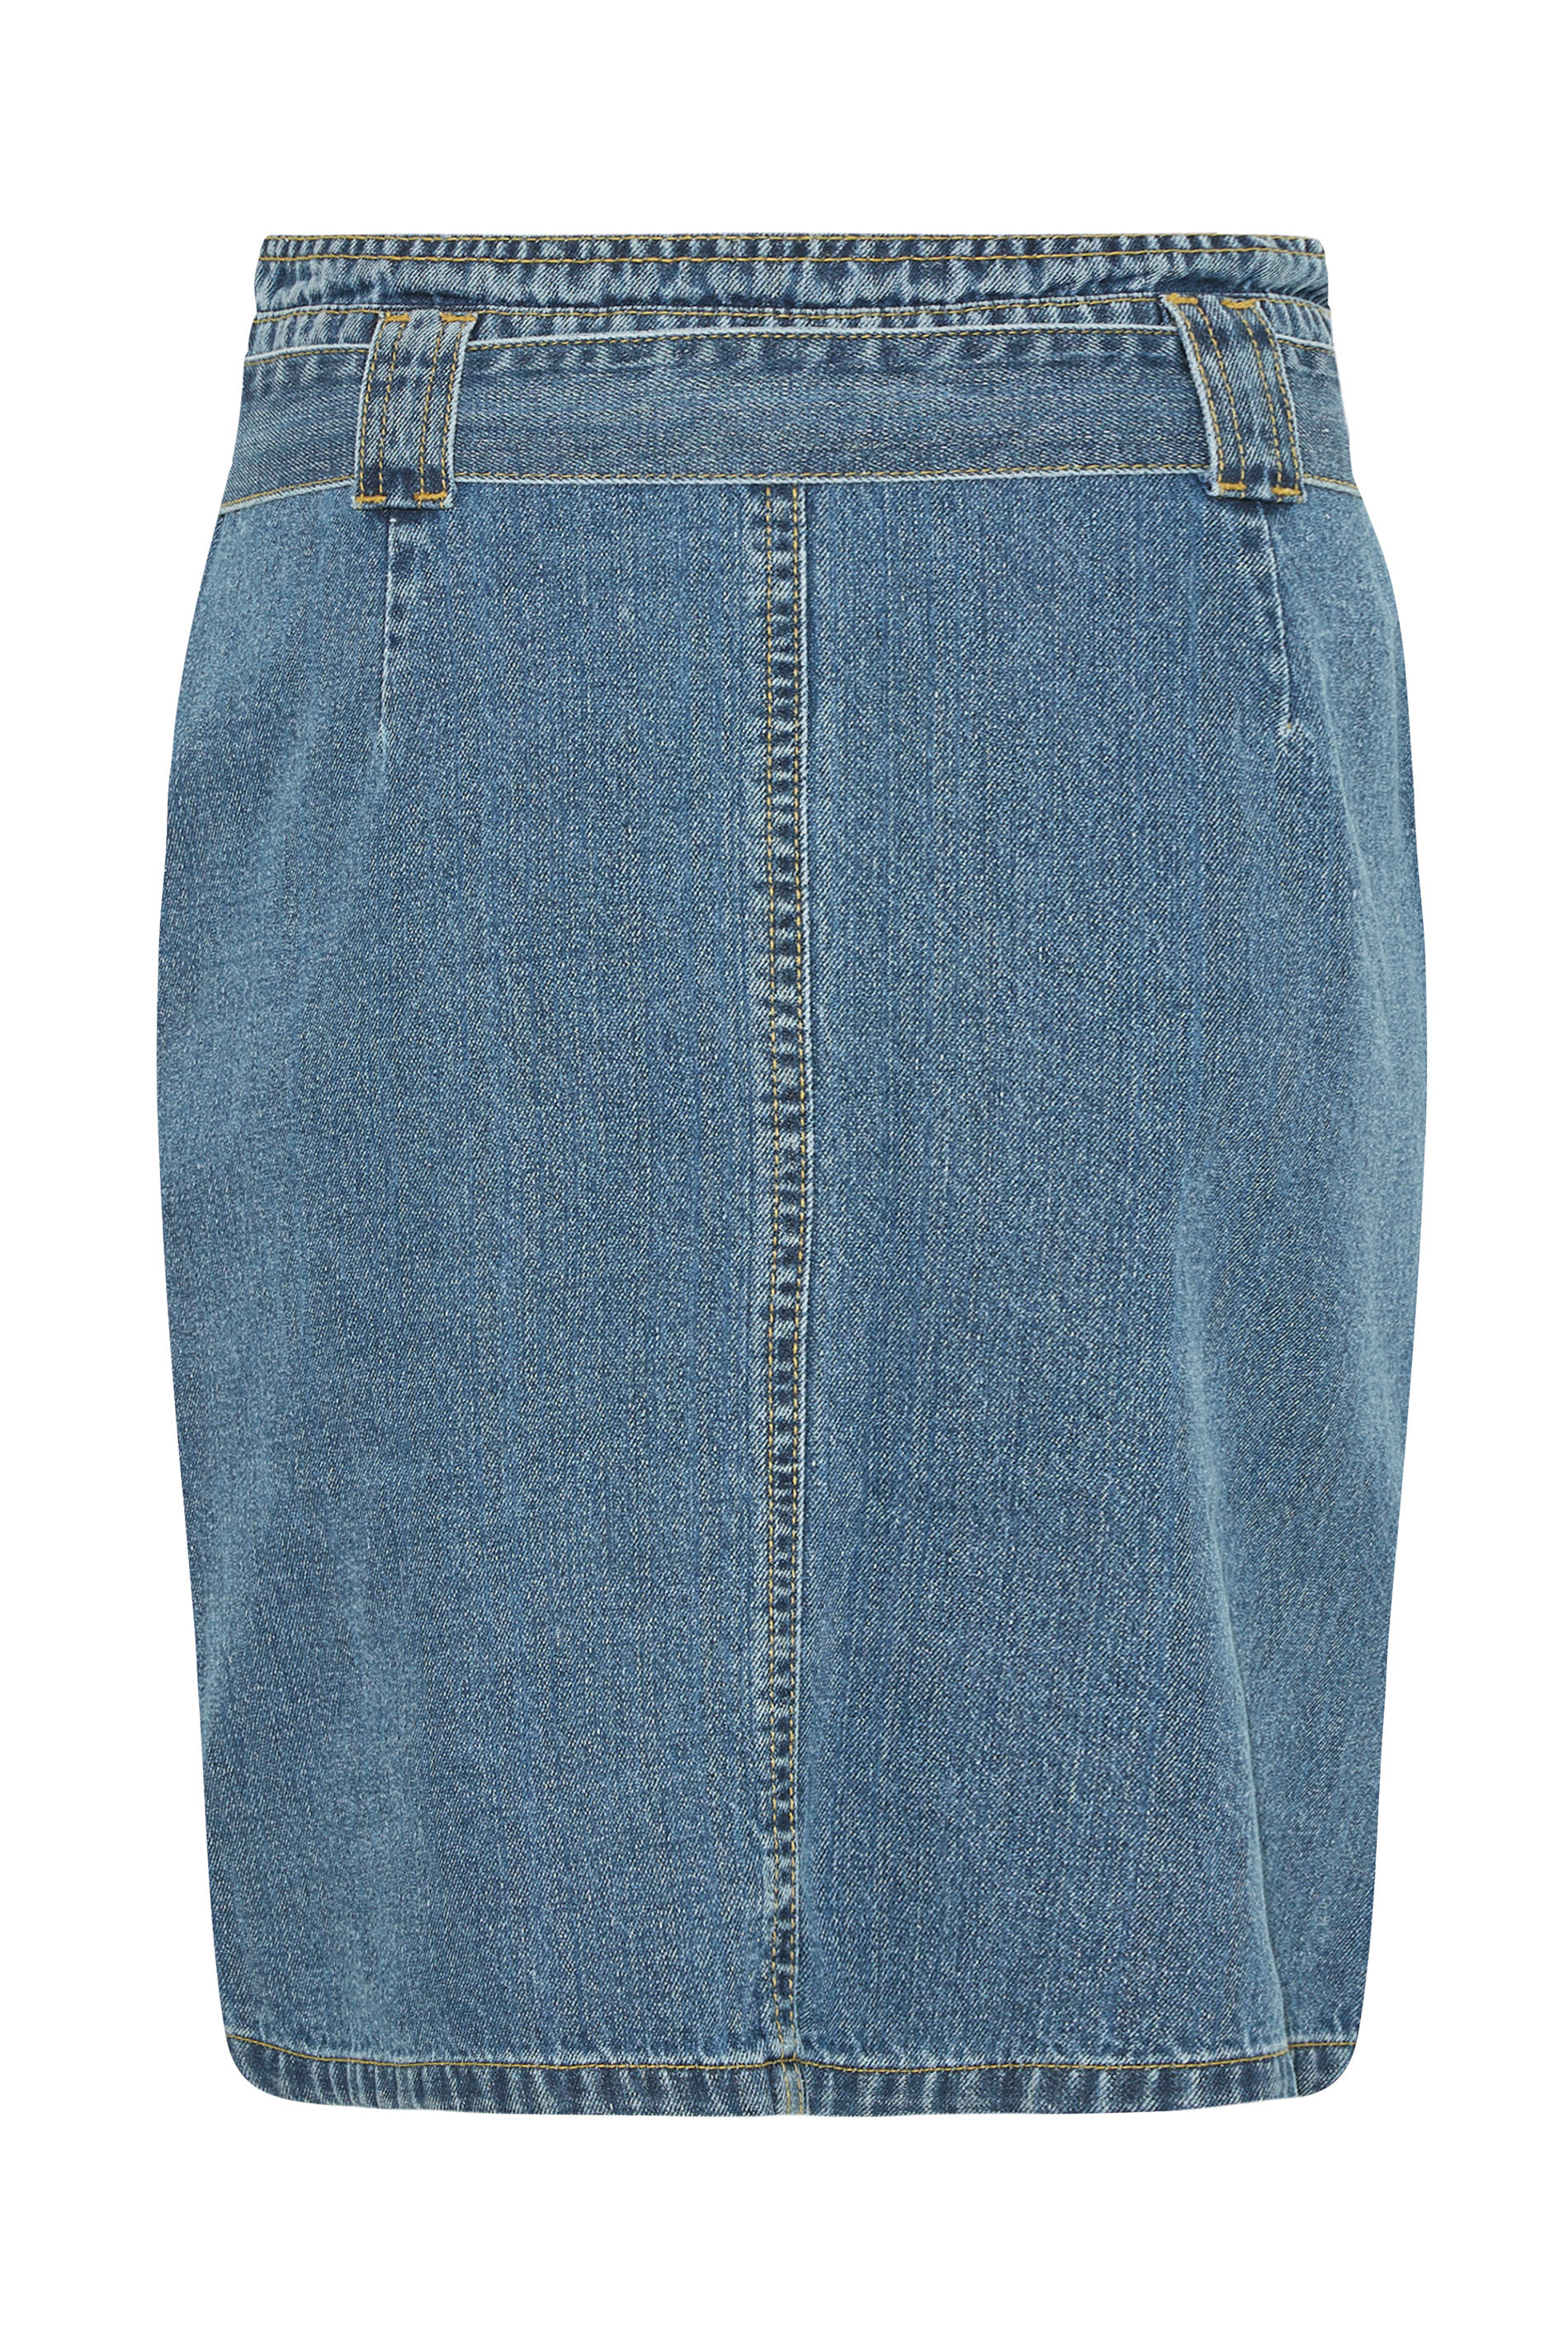 LTS Tall Women's Blue Cotton Denim Skirt | Long Tall Sally